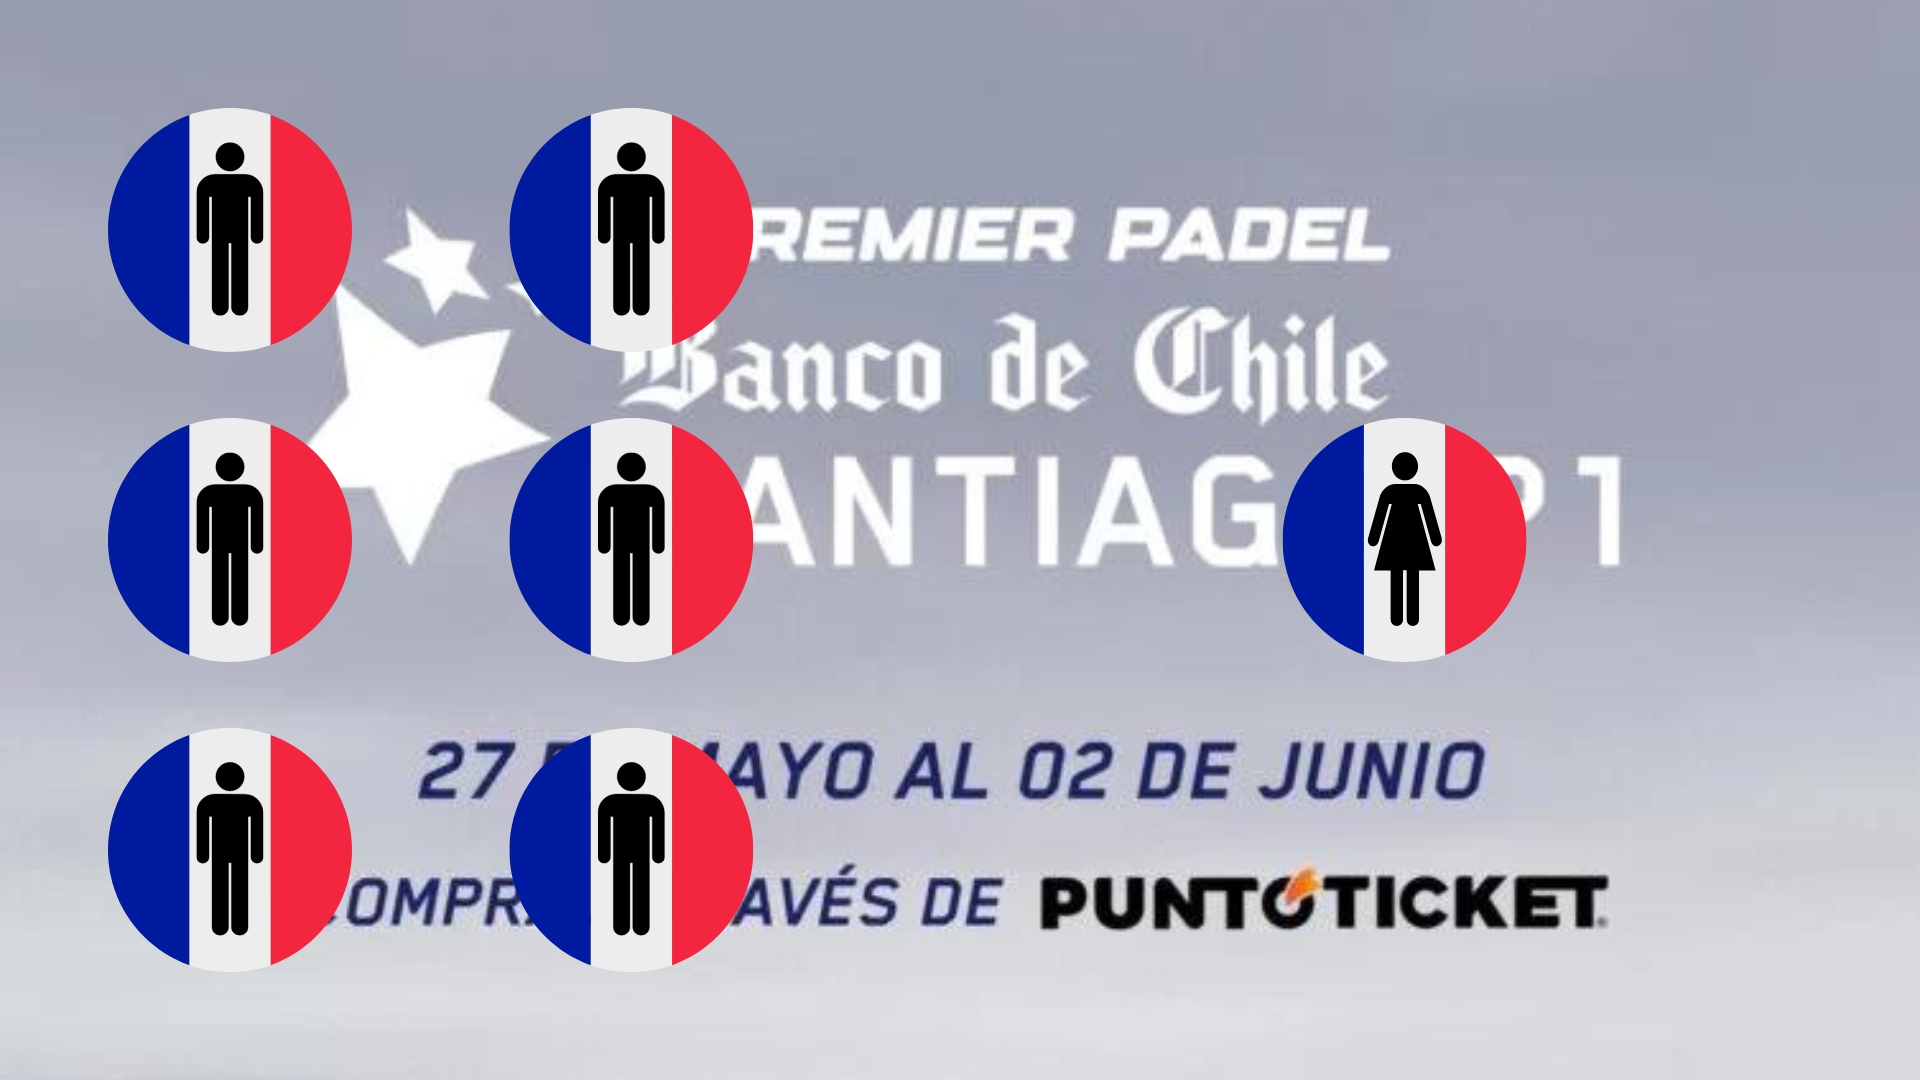 Santiago Premier Padel P1 – Sept Français entament les previas aujourd’hui